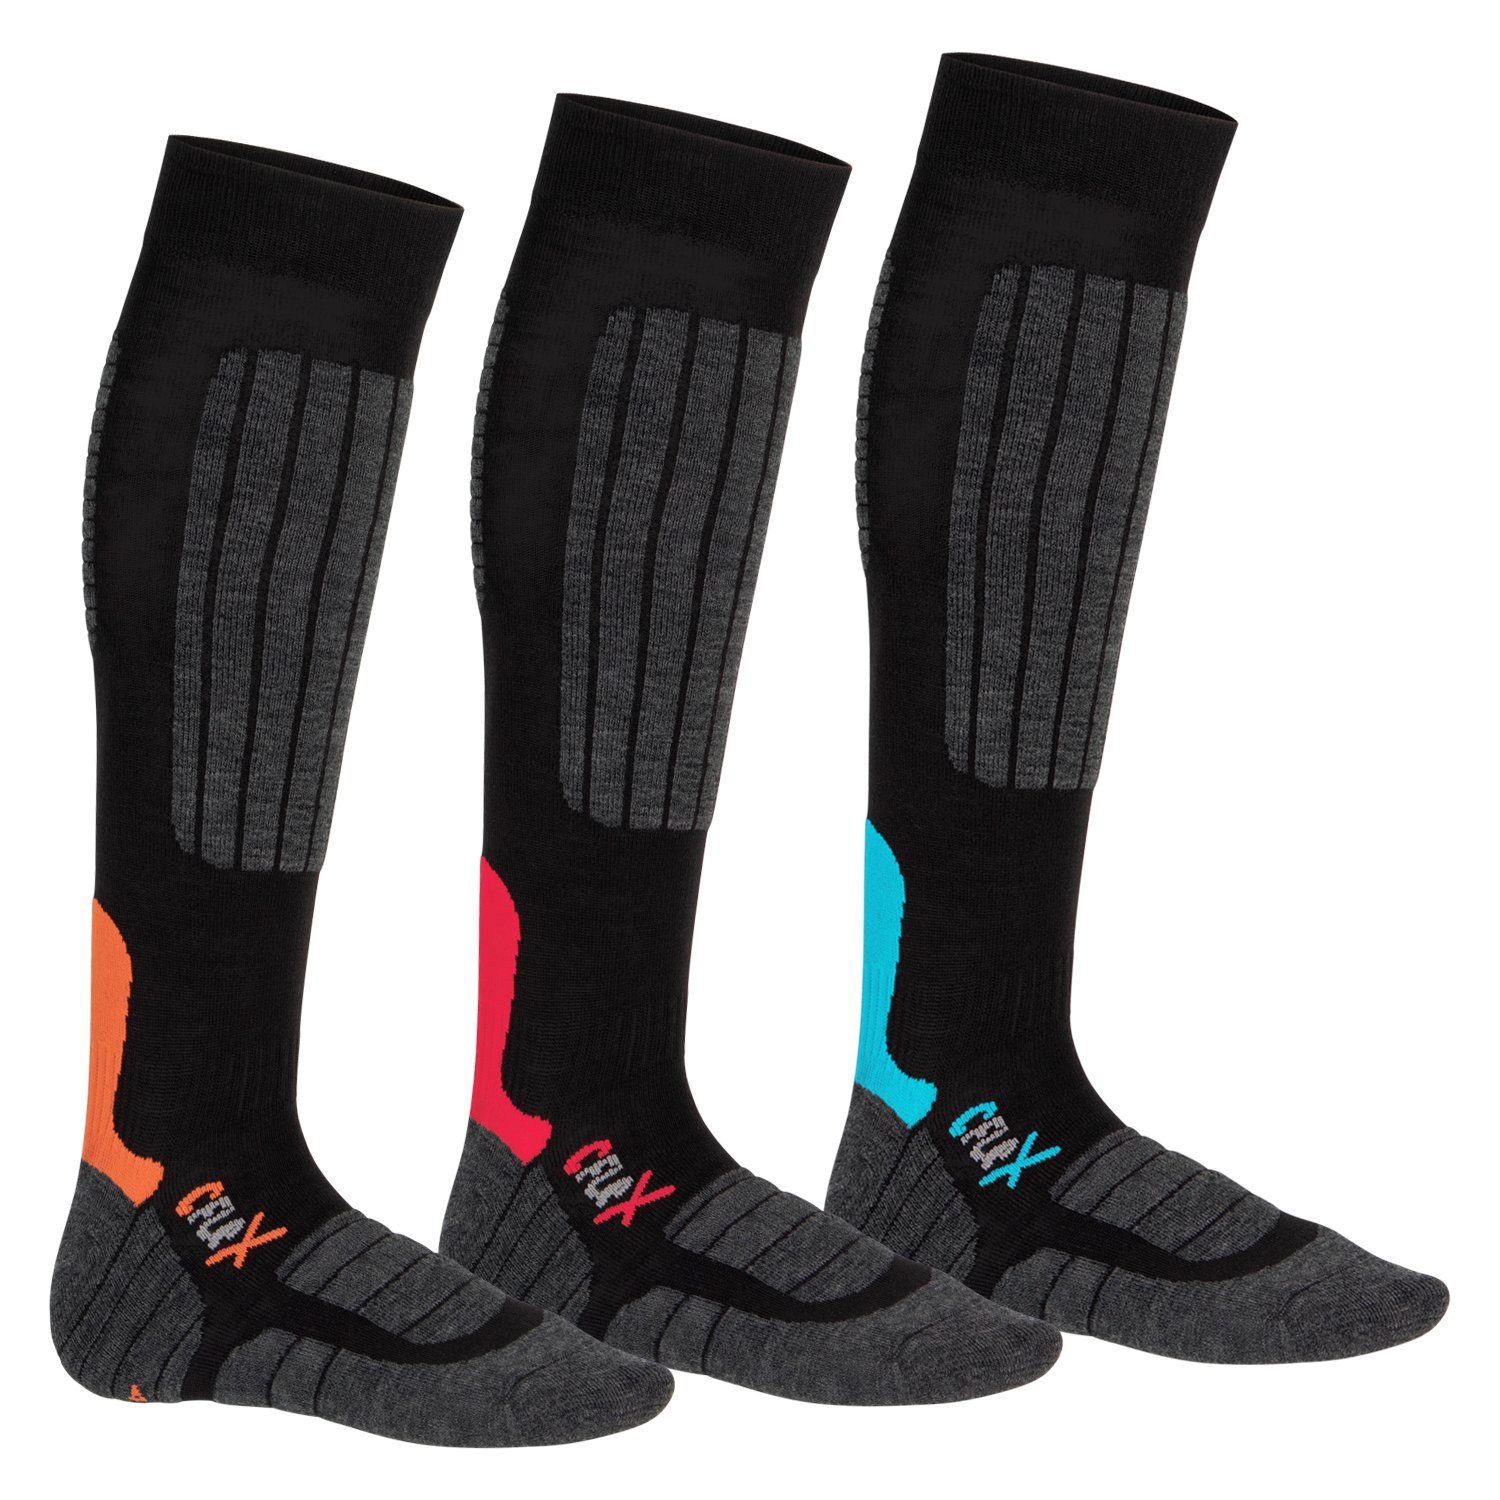 CFLEX Skisocken High Performance Ski- & Snowboard Socken für Damen & Herren 3-Farb-Pack